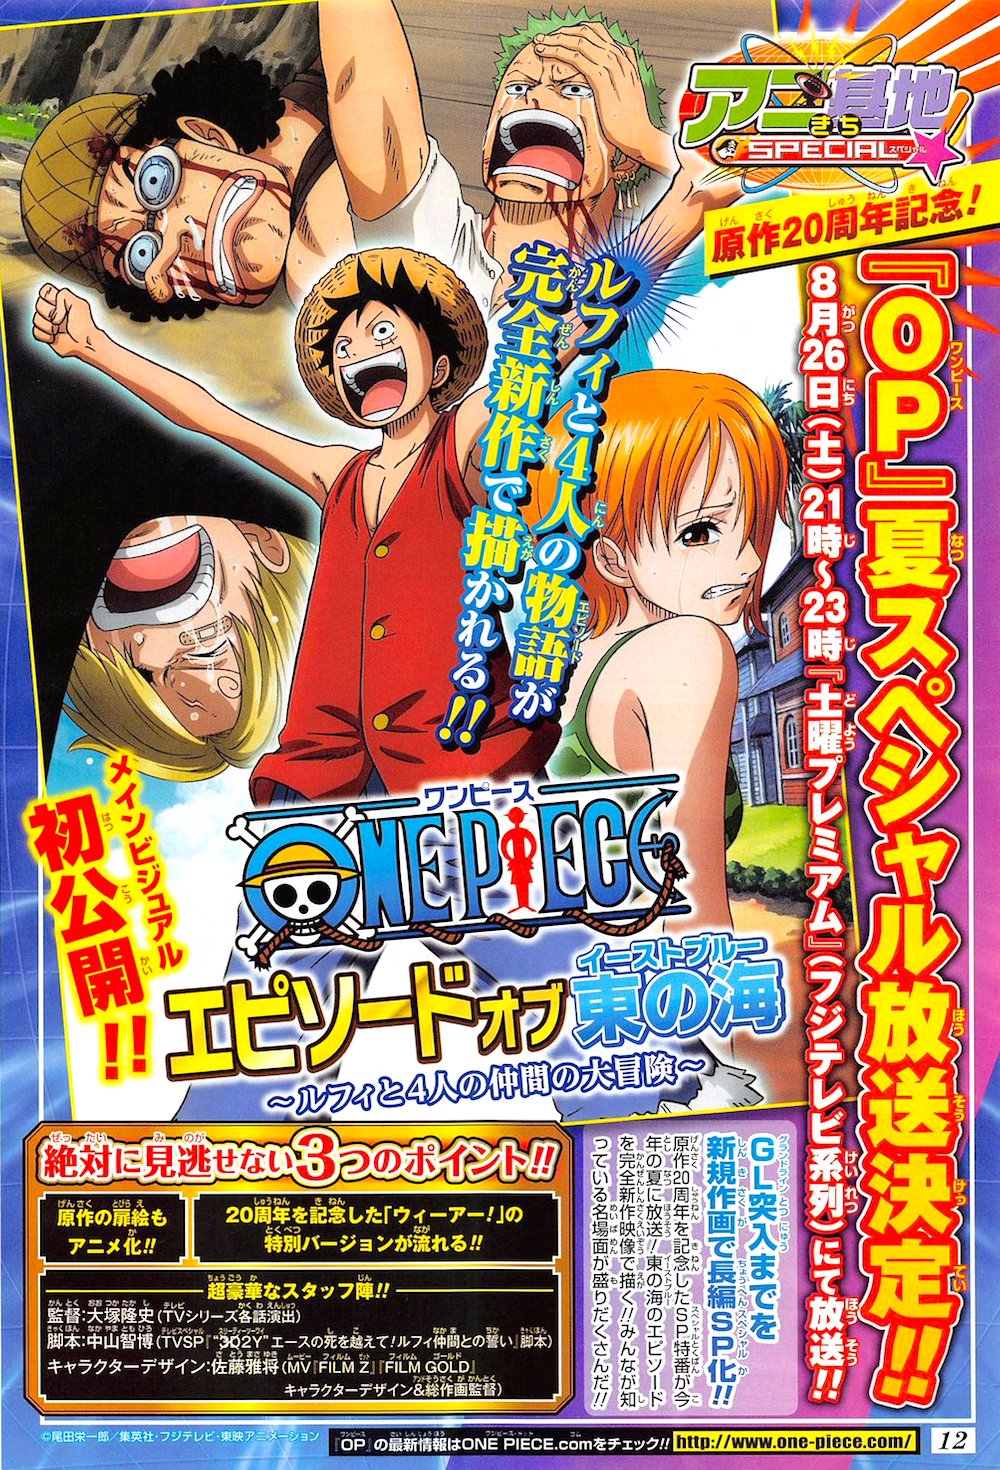 One Piece Edição Especial (HD) - East Blue (001-061) Recompensa